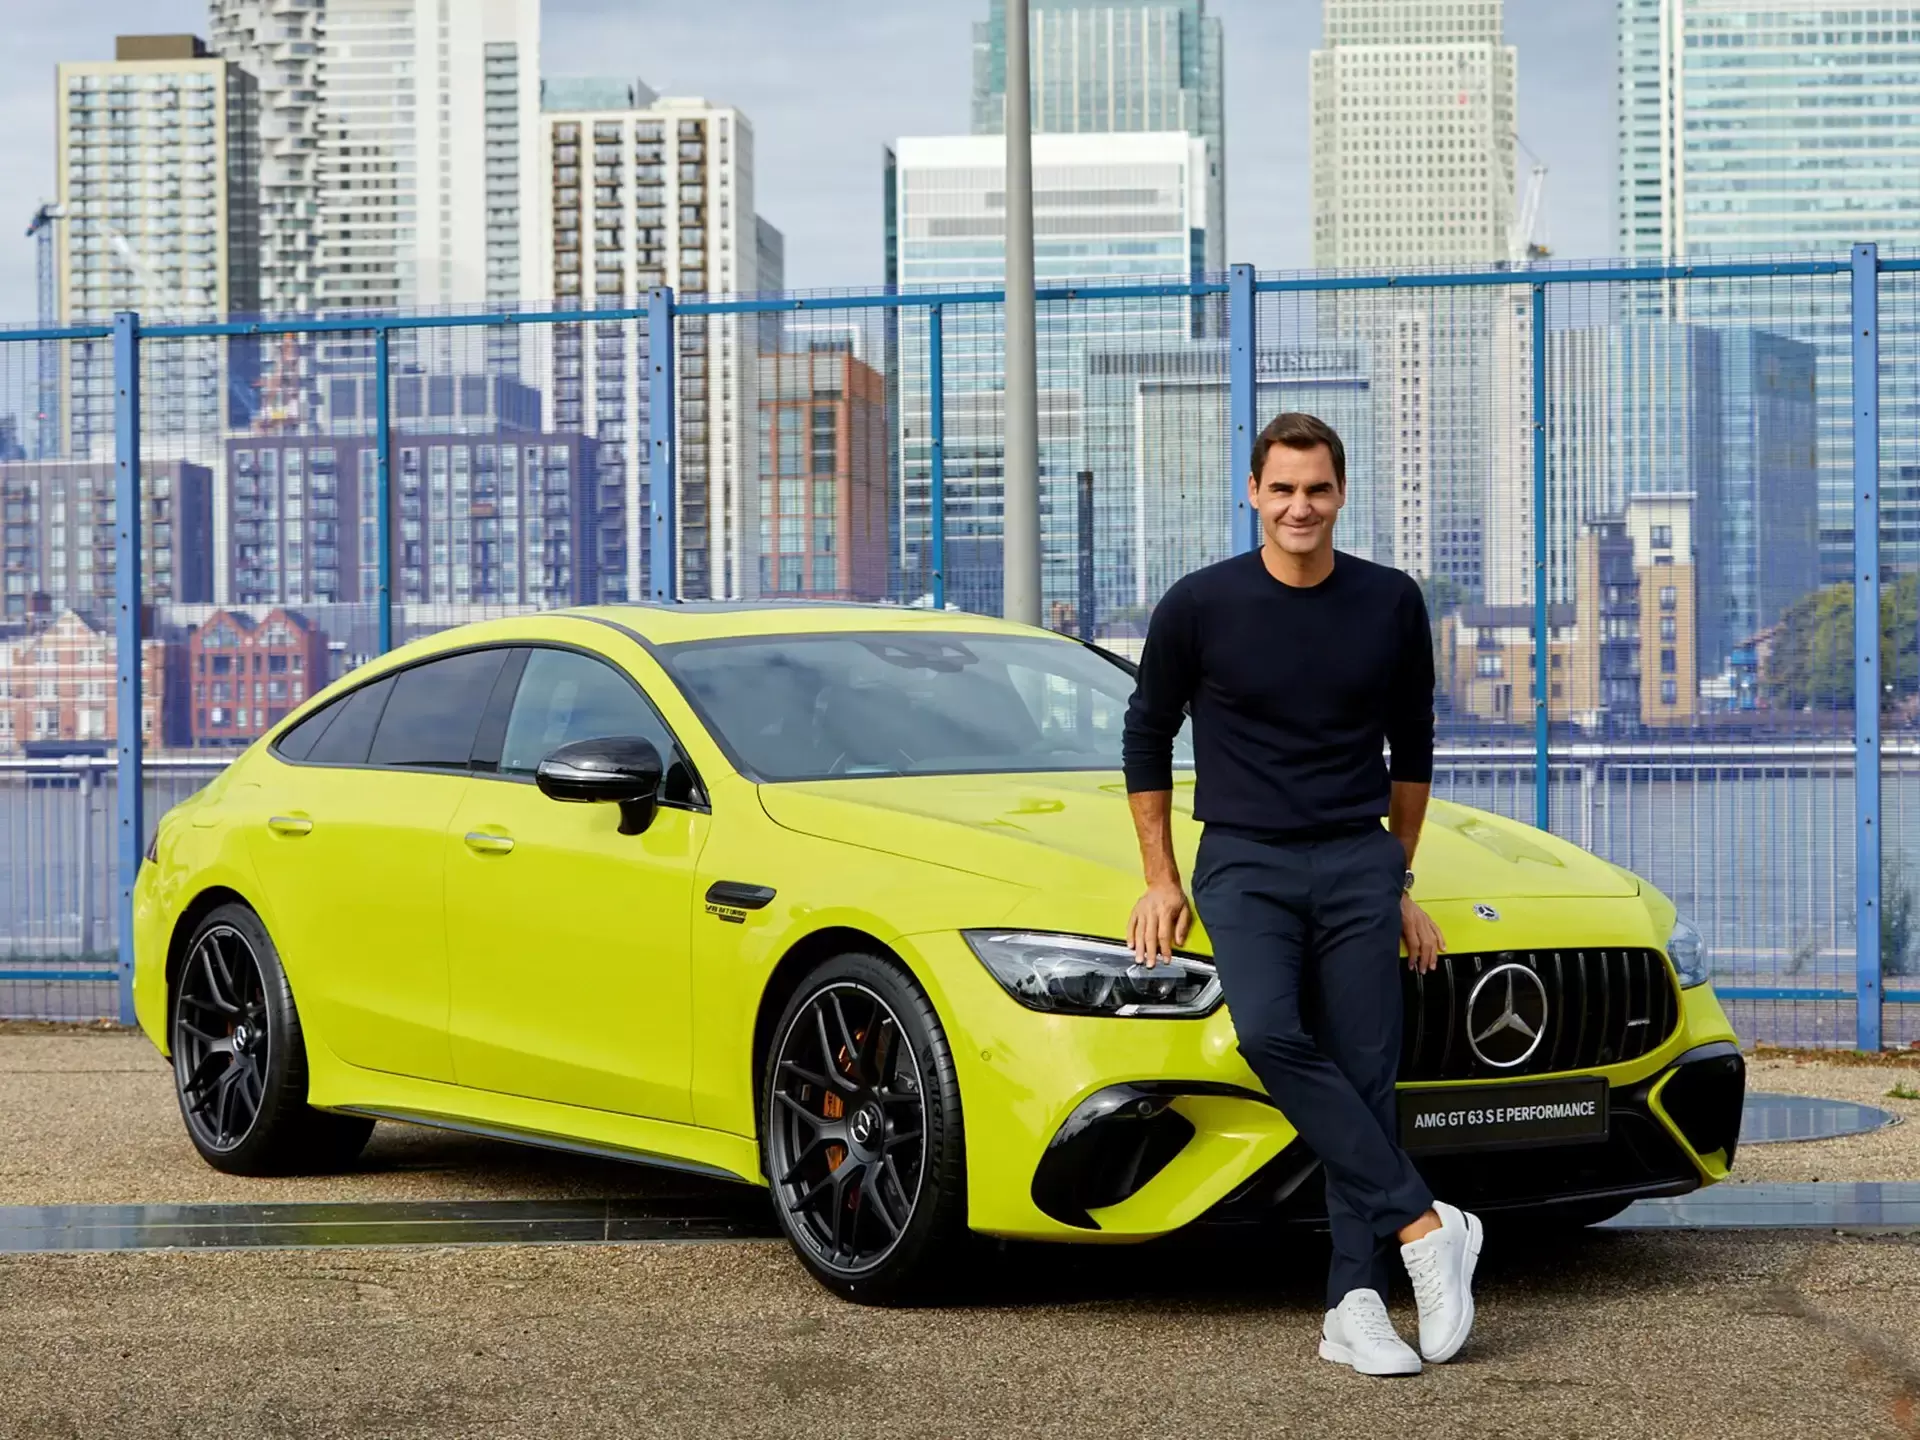 Эксклюзивный супергибрид Mercedes-AMG от Роджера Федерера появился в продаже